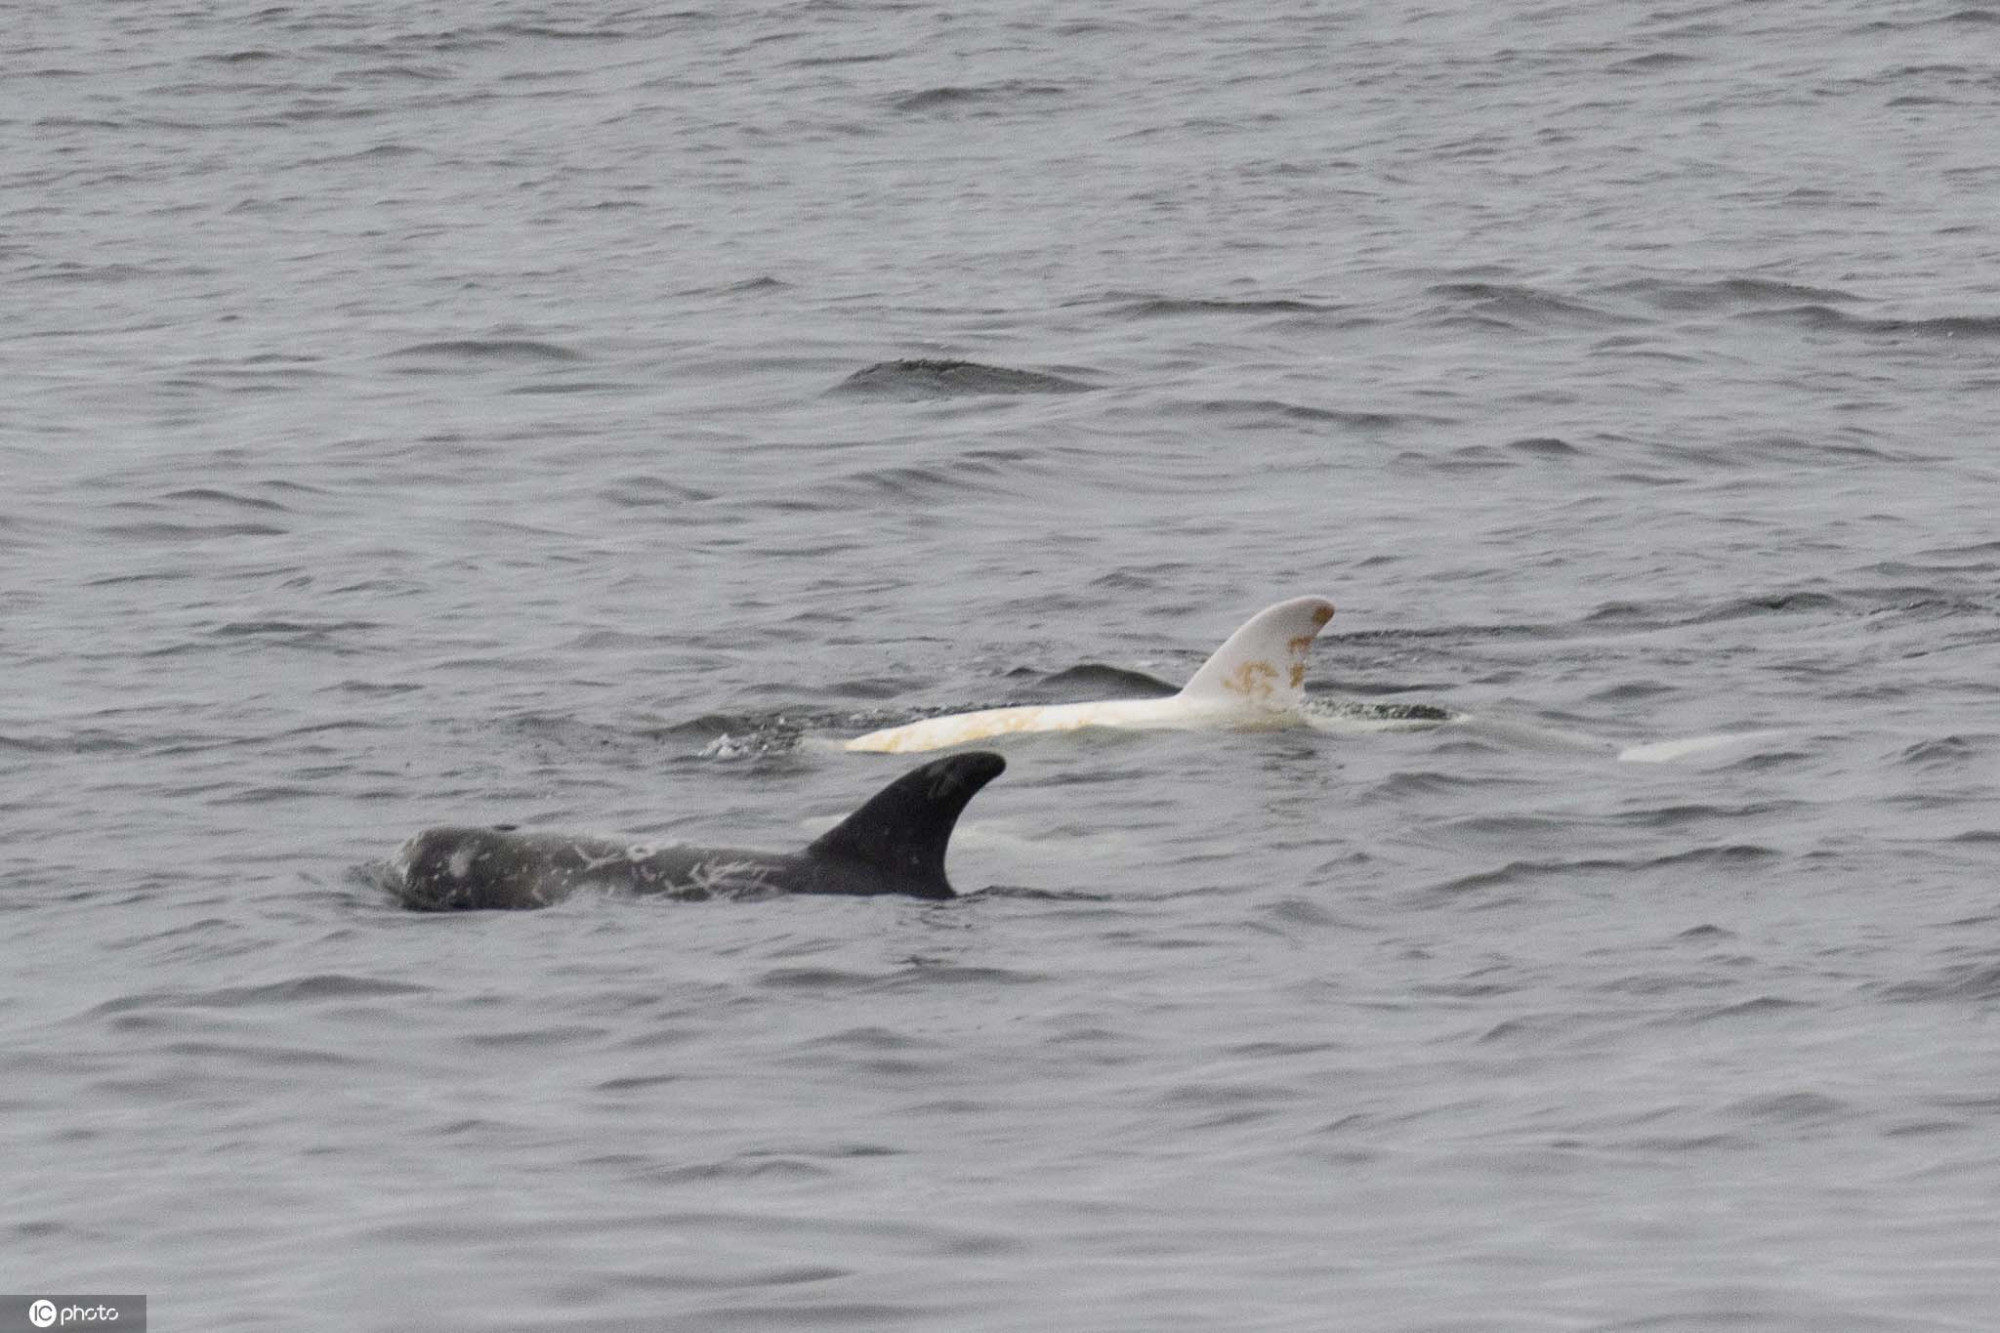 美国加州海域现罕见白化海豚与同伴游泳尤为显眼